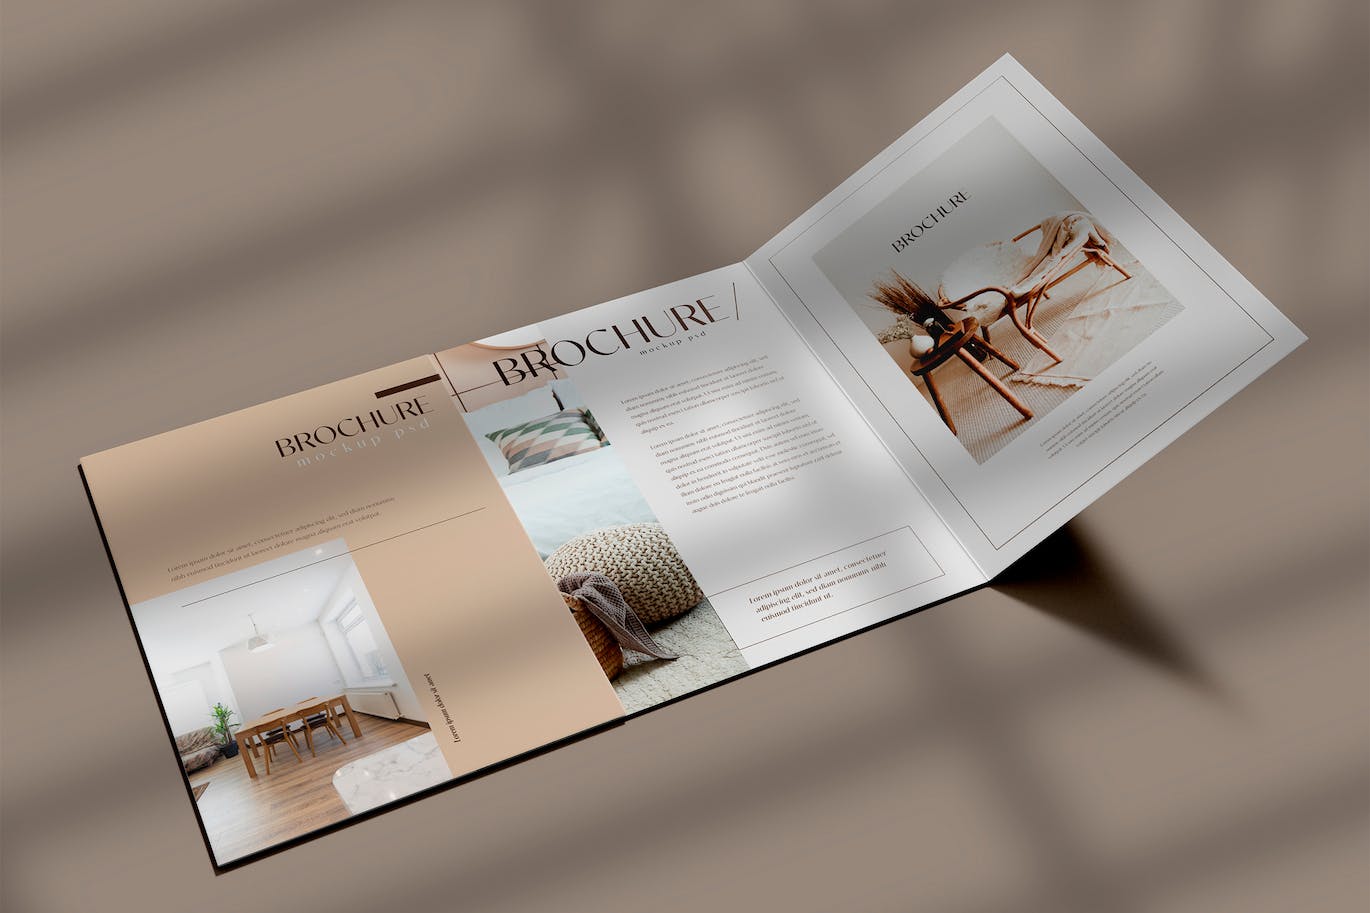 折页时尚杂志宣传册设计样机psd模板v7 Brochure Mockup 样机素材 第1张